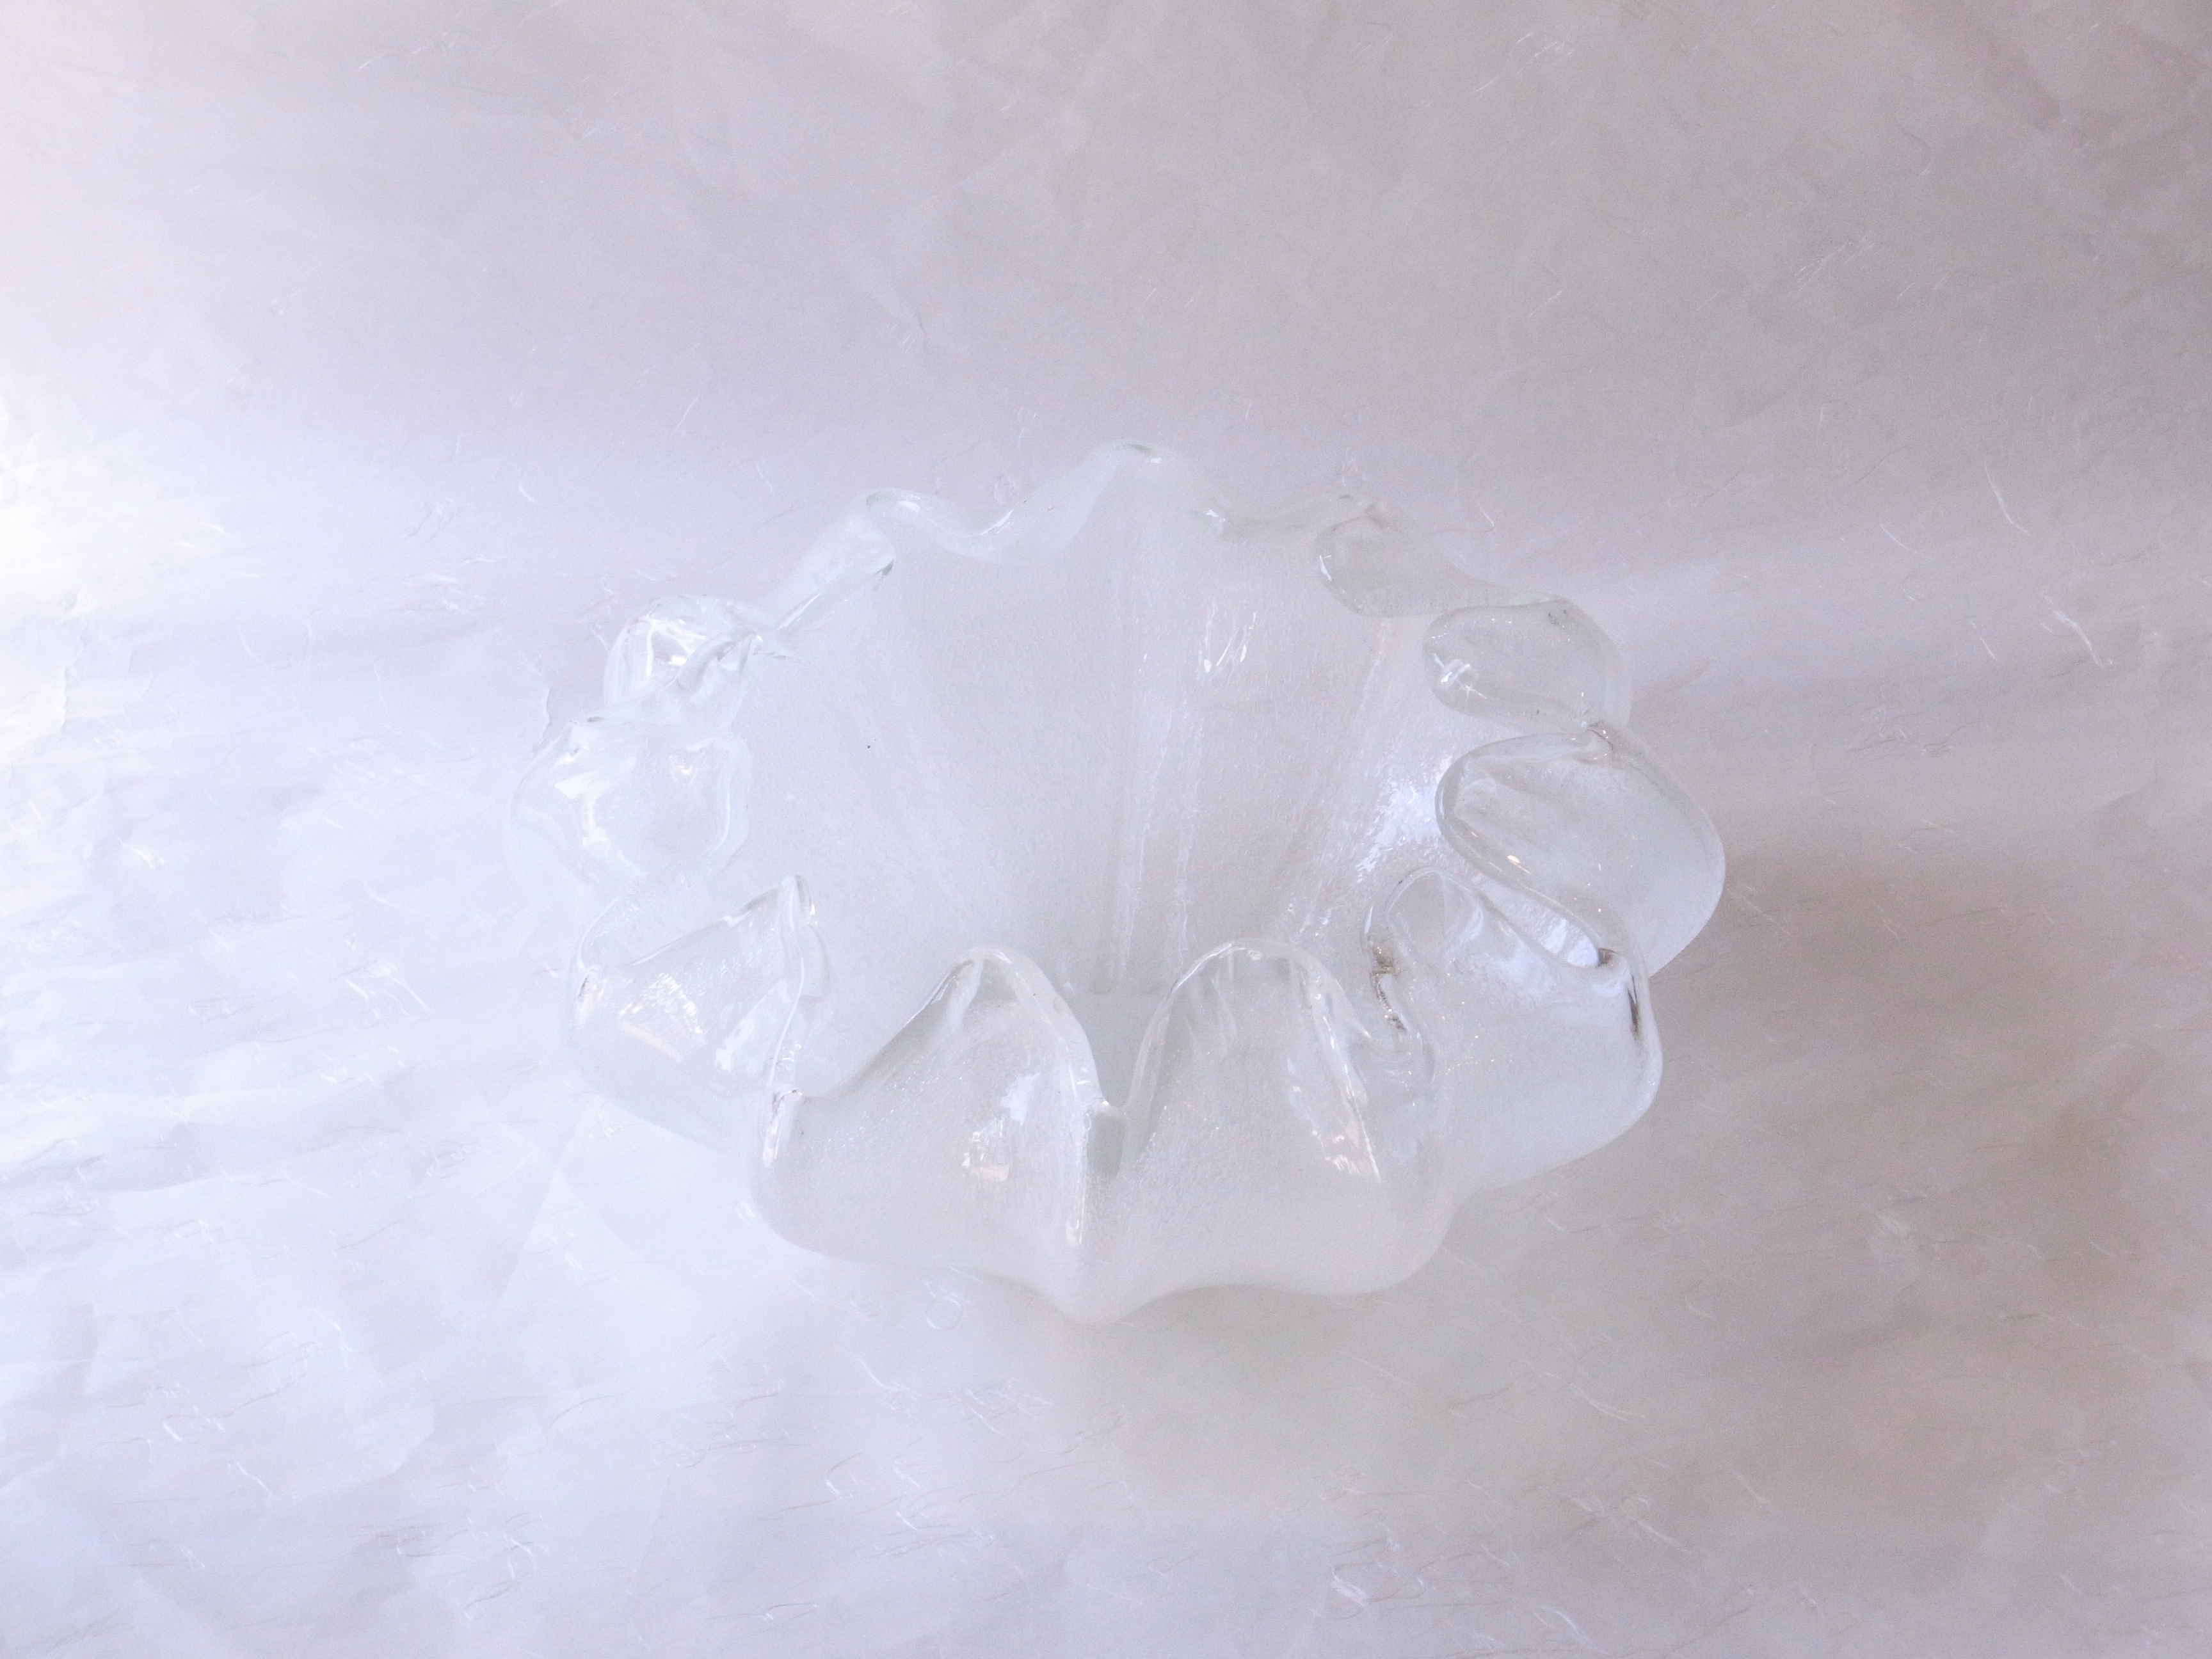 日本製　手づくりガラス　花器　花びら型　白泡　日本の職人さんが作った　つぼみから　花が開きかけている　最もいい状態　再現　ガラスを高温で熱する　熱でやわらかい内に　曲げたり　切ったり　加工しながら　花器の形　仕上げて作られる　多くの経験　熟練の技術が必要　花器の高さ　花びらの形　加工には相当の苦労が伴う　白と透明　泡の入った部分　氷のような涼しさ　無彩色　ほとんどの花を活けることが出来る　花を選ばない　様々　剣山　透明感　涼し気　存在感がある花器　日本製　陶器　磁器　陶磁器　漆器　茶道具　華道具　贈り物　ギフト　記念品　引出物　法要　お返し　専門店　リアル店舗　茶の湯　茶道　裏千家　表千家　茶会　月釜　抹茶　高品質　安らぎ　いやし　よりおいしく　安心　機能的　長持ち　人気　おすすめ　高機能　ネット通販　ネットショップ　セレクトショップ　欲しい　購入　買う　買い物　岐阜県　岐阜市　美殿町　小林漆陶　特別な　選び抜かれた　品質重視　使いやすい　格安　老舗　誕生日　結婚　出産　入学　退職　母の日　父の日　敬老の日　クリスマス　プレゼント　叙勲　長寿　新築　お祝い　御礼　内祝い　外国土産　海外みやげ　実店舗　創業１００年以上　使うと分かる　職人技 日本一の品揃え　日本一の在庫数　専門店　専門知識　数万点の在庫　百貨店（高島屋　三越　伊勢丹　松坂屋　大丸）にない　手作り　お洒落　高級品　希少価値　上質な器 伝統工芸品　コスパ　お値打ち　お買い得　堅牢　飽きない　永く使える　お気に入り　国産　料理が映える　満足感　豊かな食生活　豊かな食文化　こだわりの器　日本文化　他にない　ここにしかない　オリジナル　独自の　個性的　ここでしか買えない　超レアもの　一品もの　現品限り　入手困難　いい器　匠の技　美しい　実用的　外人が喜ぶ店　外人が珍しがる店　外人がうれしい店　日本各地の一級品を売る店　日本全国の器を売る店　本当にいいもの コスパ高い　一流品　修理　選りすぐりの逸品　周年記念　永年勤続表彰　退職記念　卒業記念　日本土産　岐阜土産　岐阜のおみやげ　岐阜の特産品　料理を引き立てる器　高級店　一流店　岐阜で一番　東海で一番　中部で一番　日本で一番　おしゃれな店　地域一番店　実店舗　陶磁器　磁器　華道具　ガラス器　明治４２年創業　有田焼　清水焼　美濃焼　赤津焼　万古焼　常滑焼　九谷焼　唐津焼　萩焼　信楽焼　万古焼　砥部焼　備前焼　丹波焼　山中塗　春慶塗　讃岐塗　越前塗　輪島塗　紀州塗　会津塗　小田原木工　桜皮細工　秋田杉　駿河竹細工　七宝焼　南部鉄器　錫製品　江戸切子　津軽びいどろ　　　